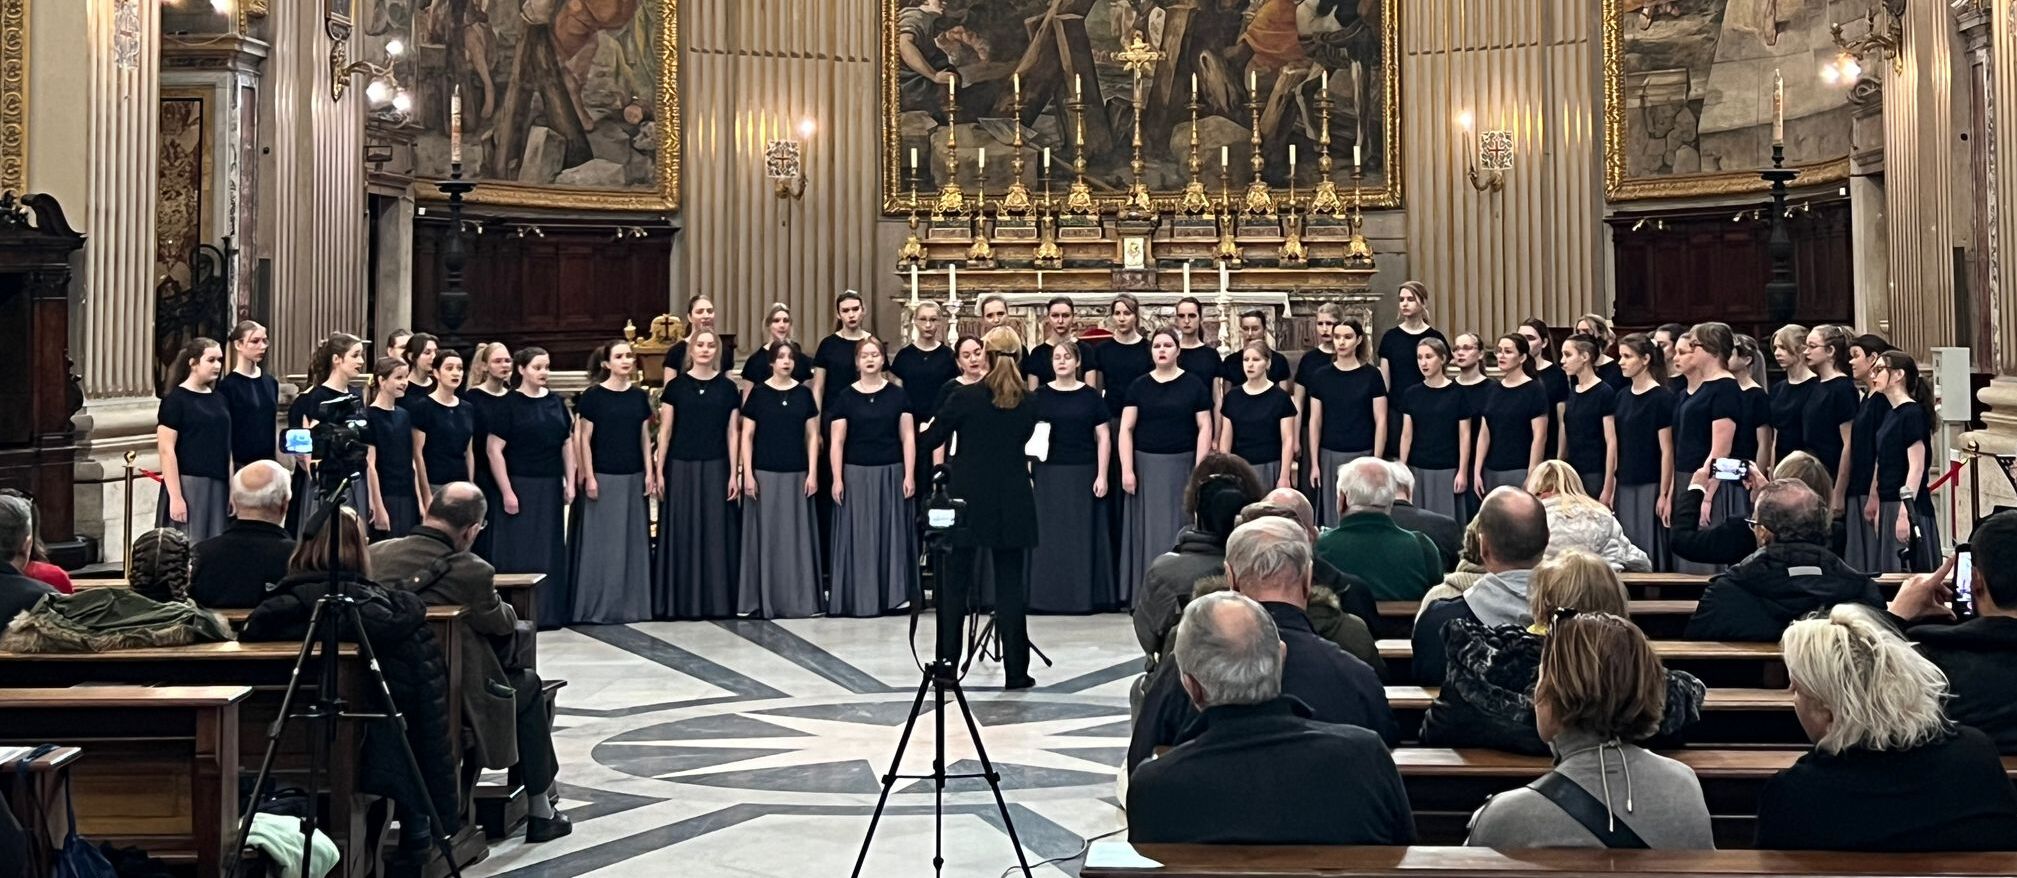 Białostocki chór żeński podczas występu w Rzymie